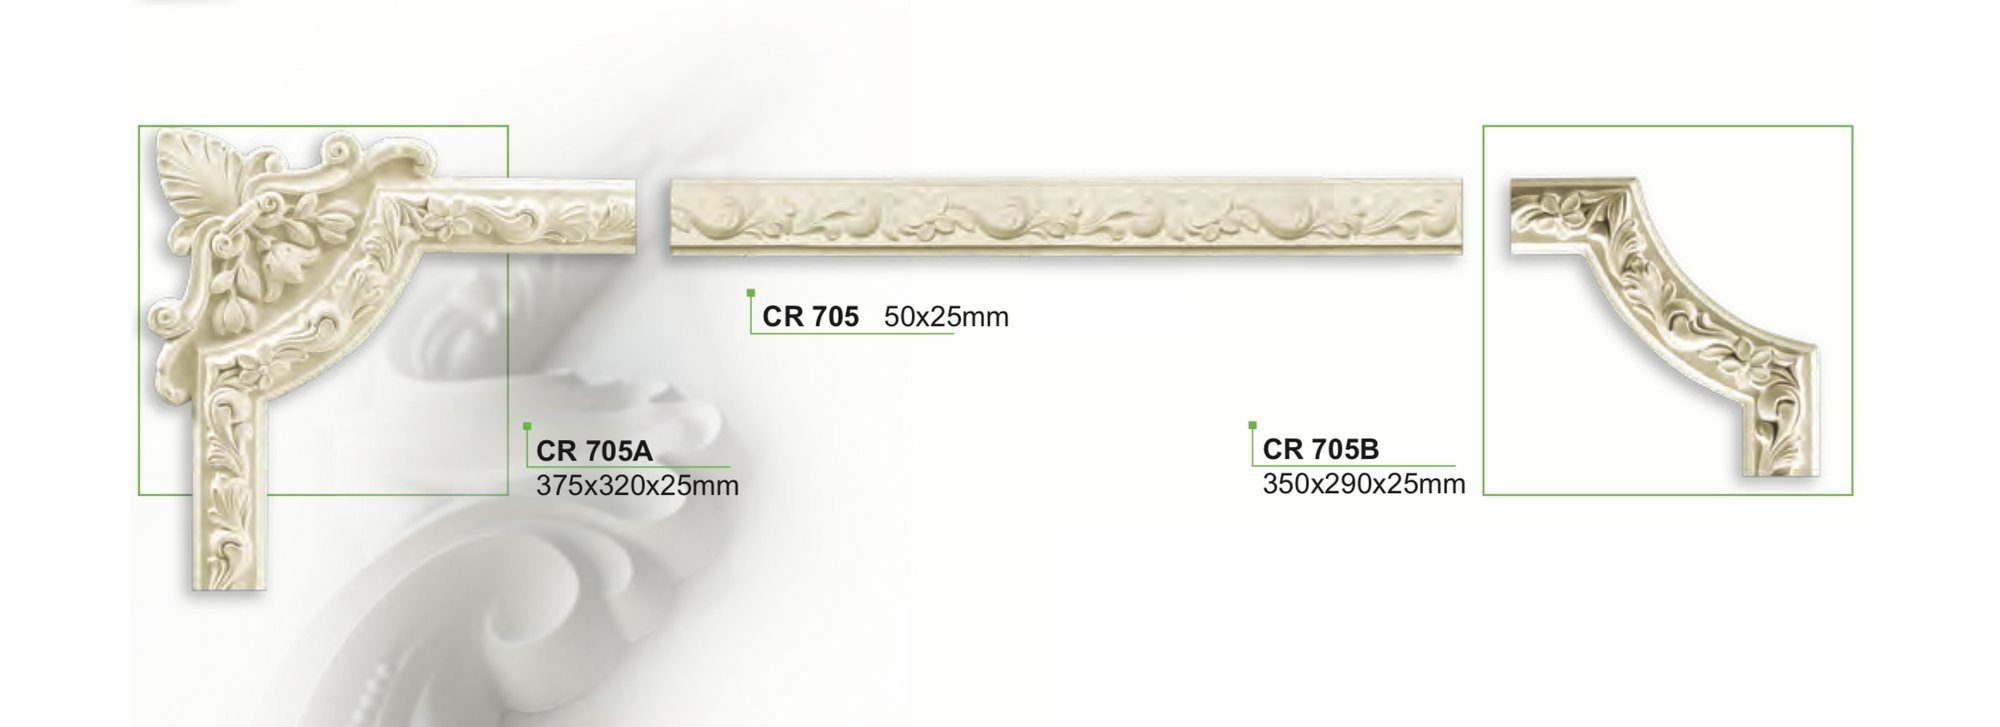 aus stoßfest, - Deckenumrandung Ergänzung Stuckleiste Segment als Grand hart Decor und CR705A, & Spiegelrahmen / 320x25mm PU weiß Flachleiste, zur Wand- CR705A -